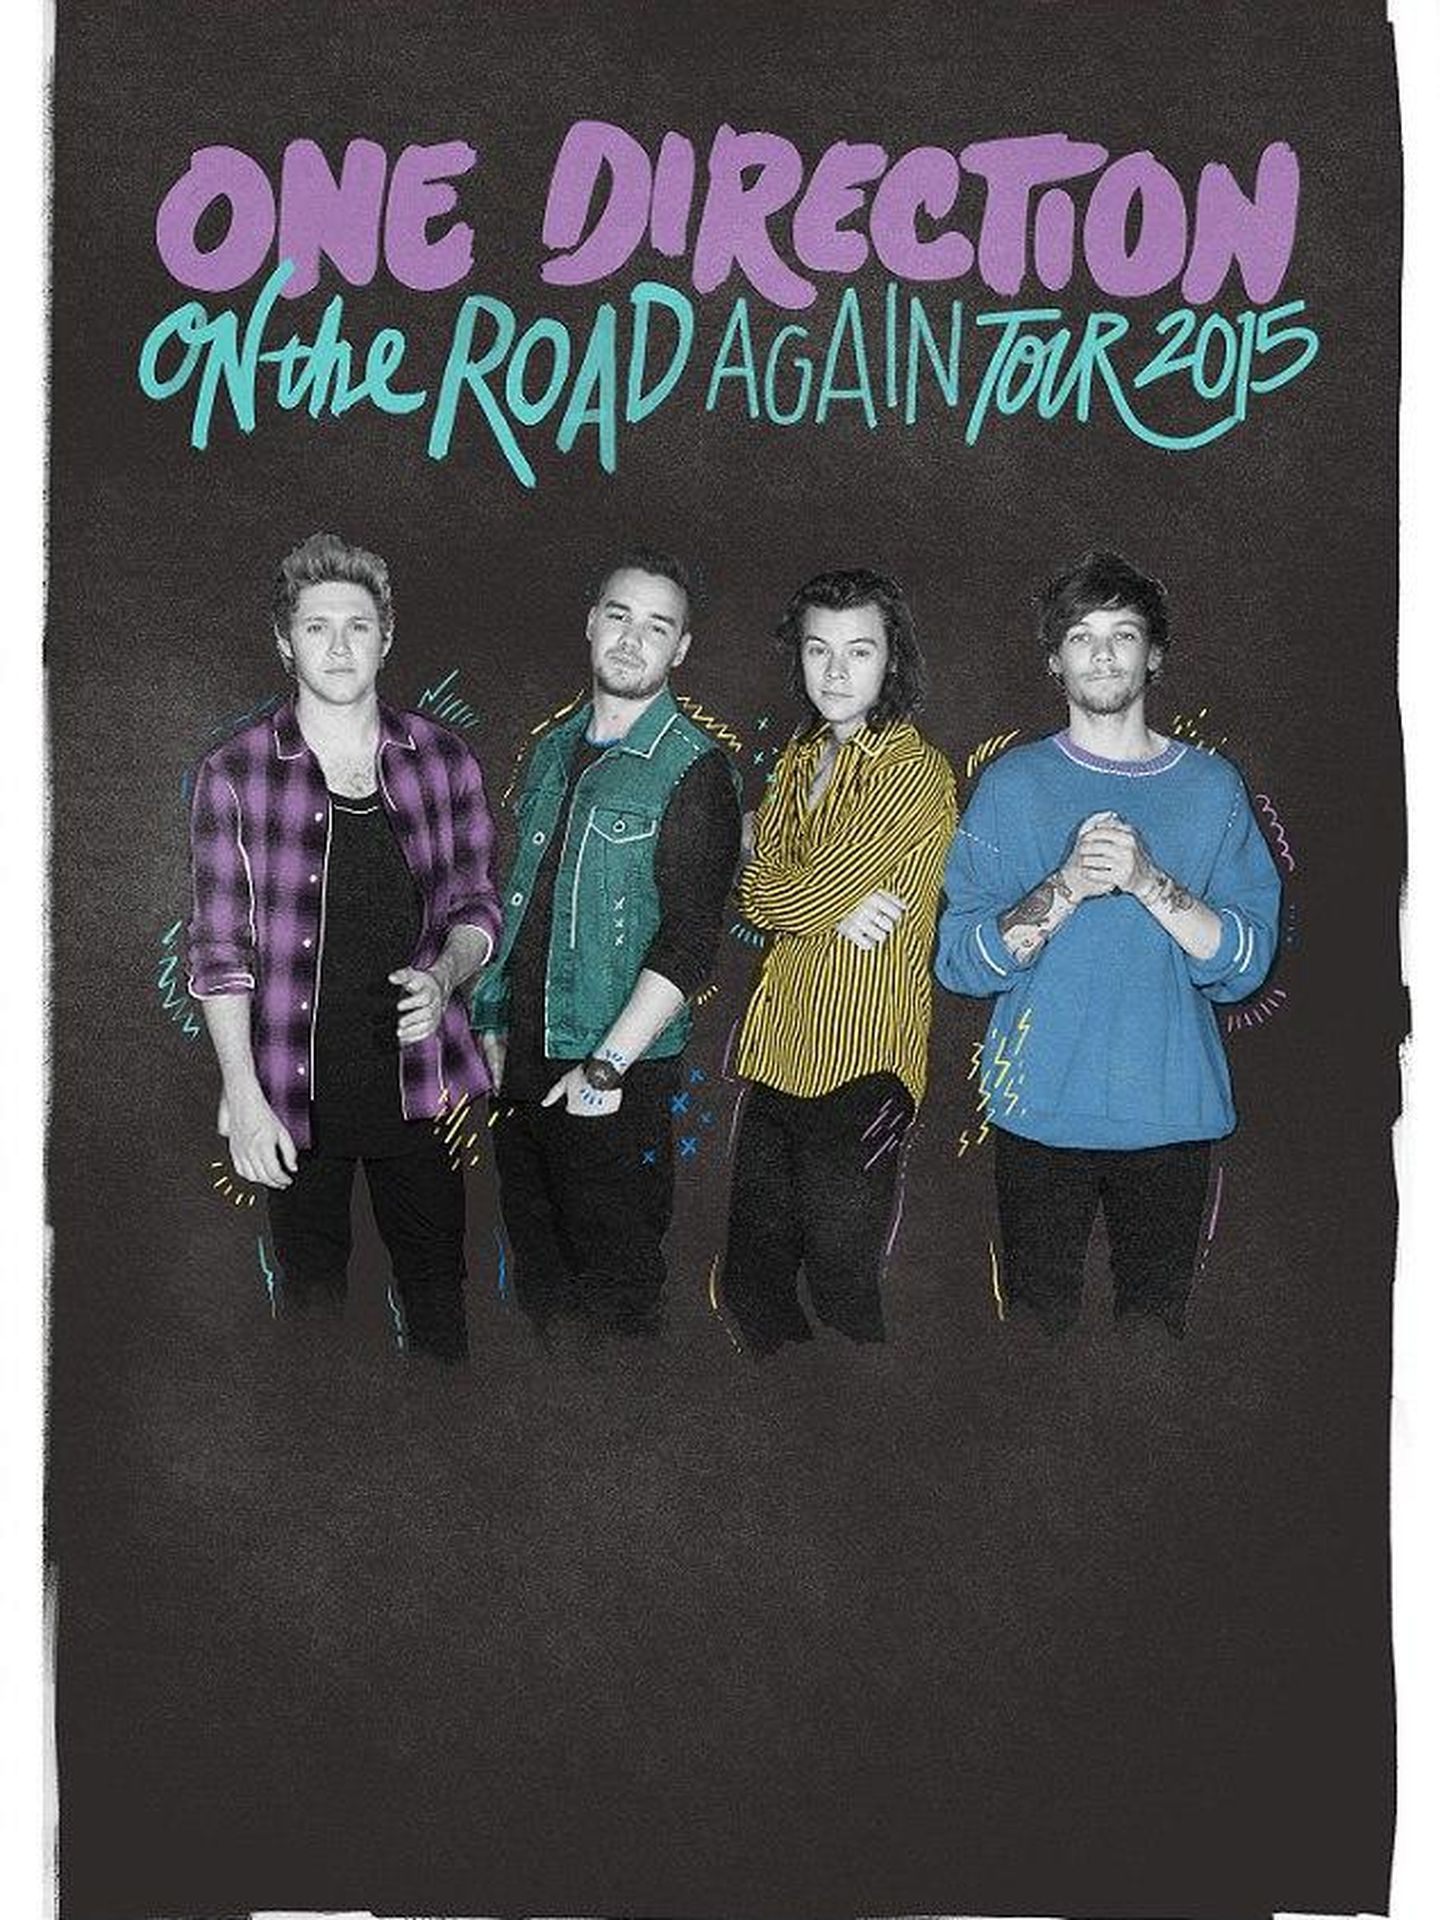 Nuevo cartel de One Direction sin Zayn Malik